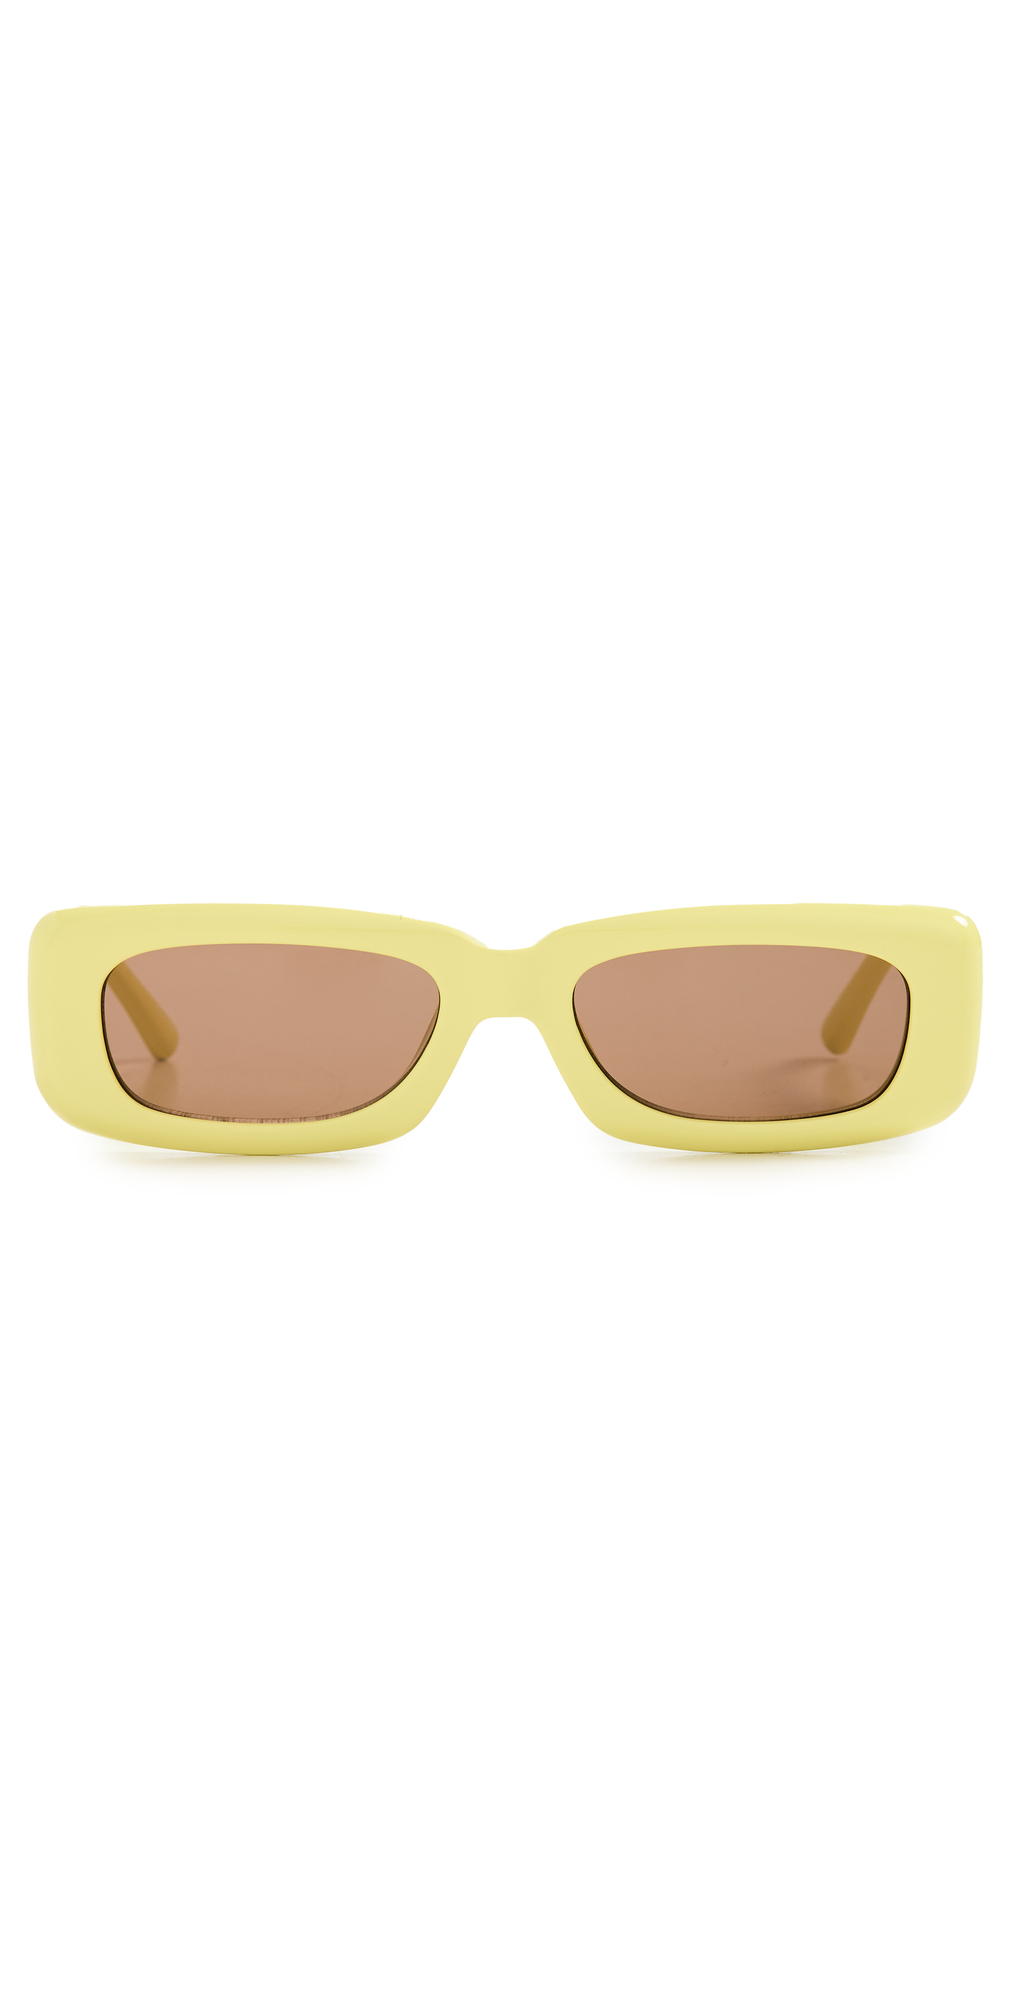 Linda Farrow Luxe Mini Marfa Sunglasses in brown / gold / yellow